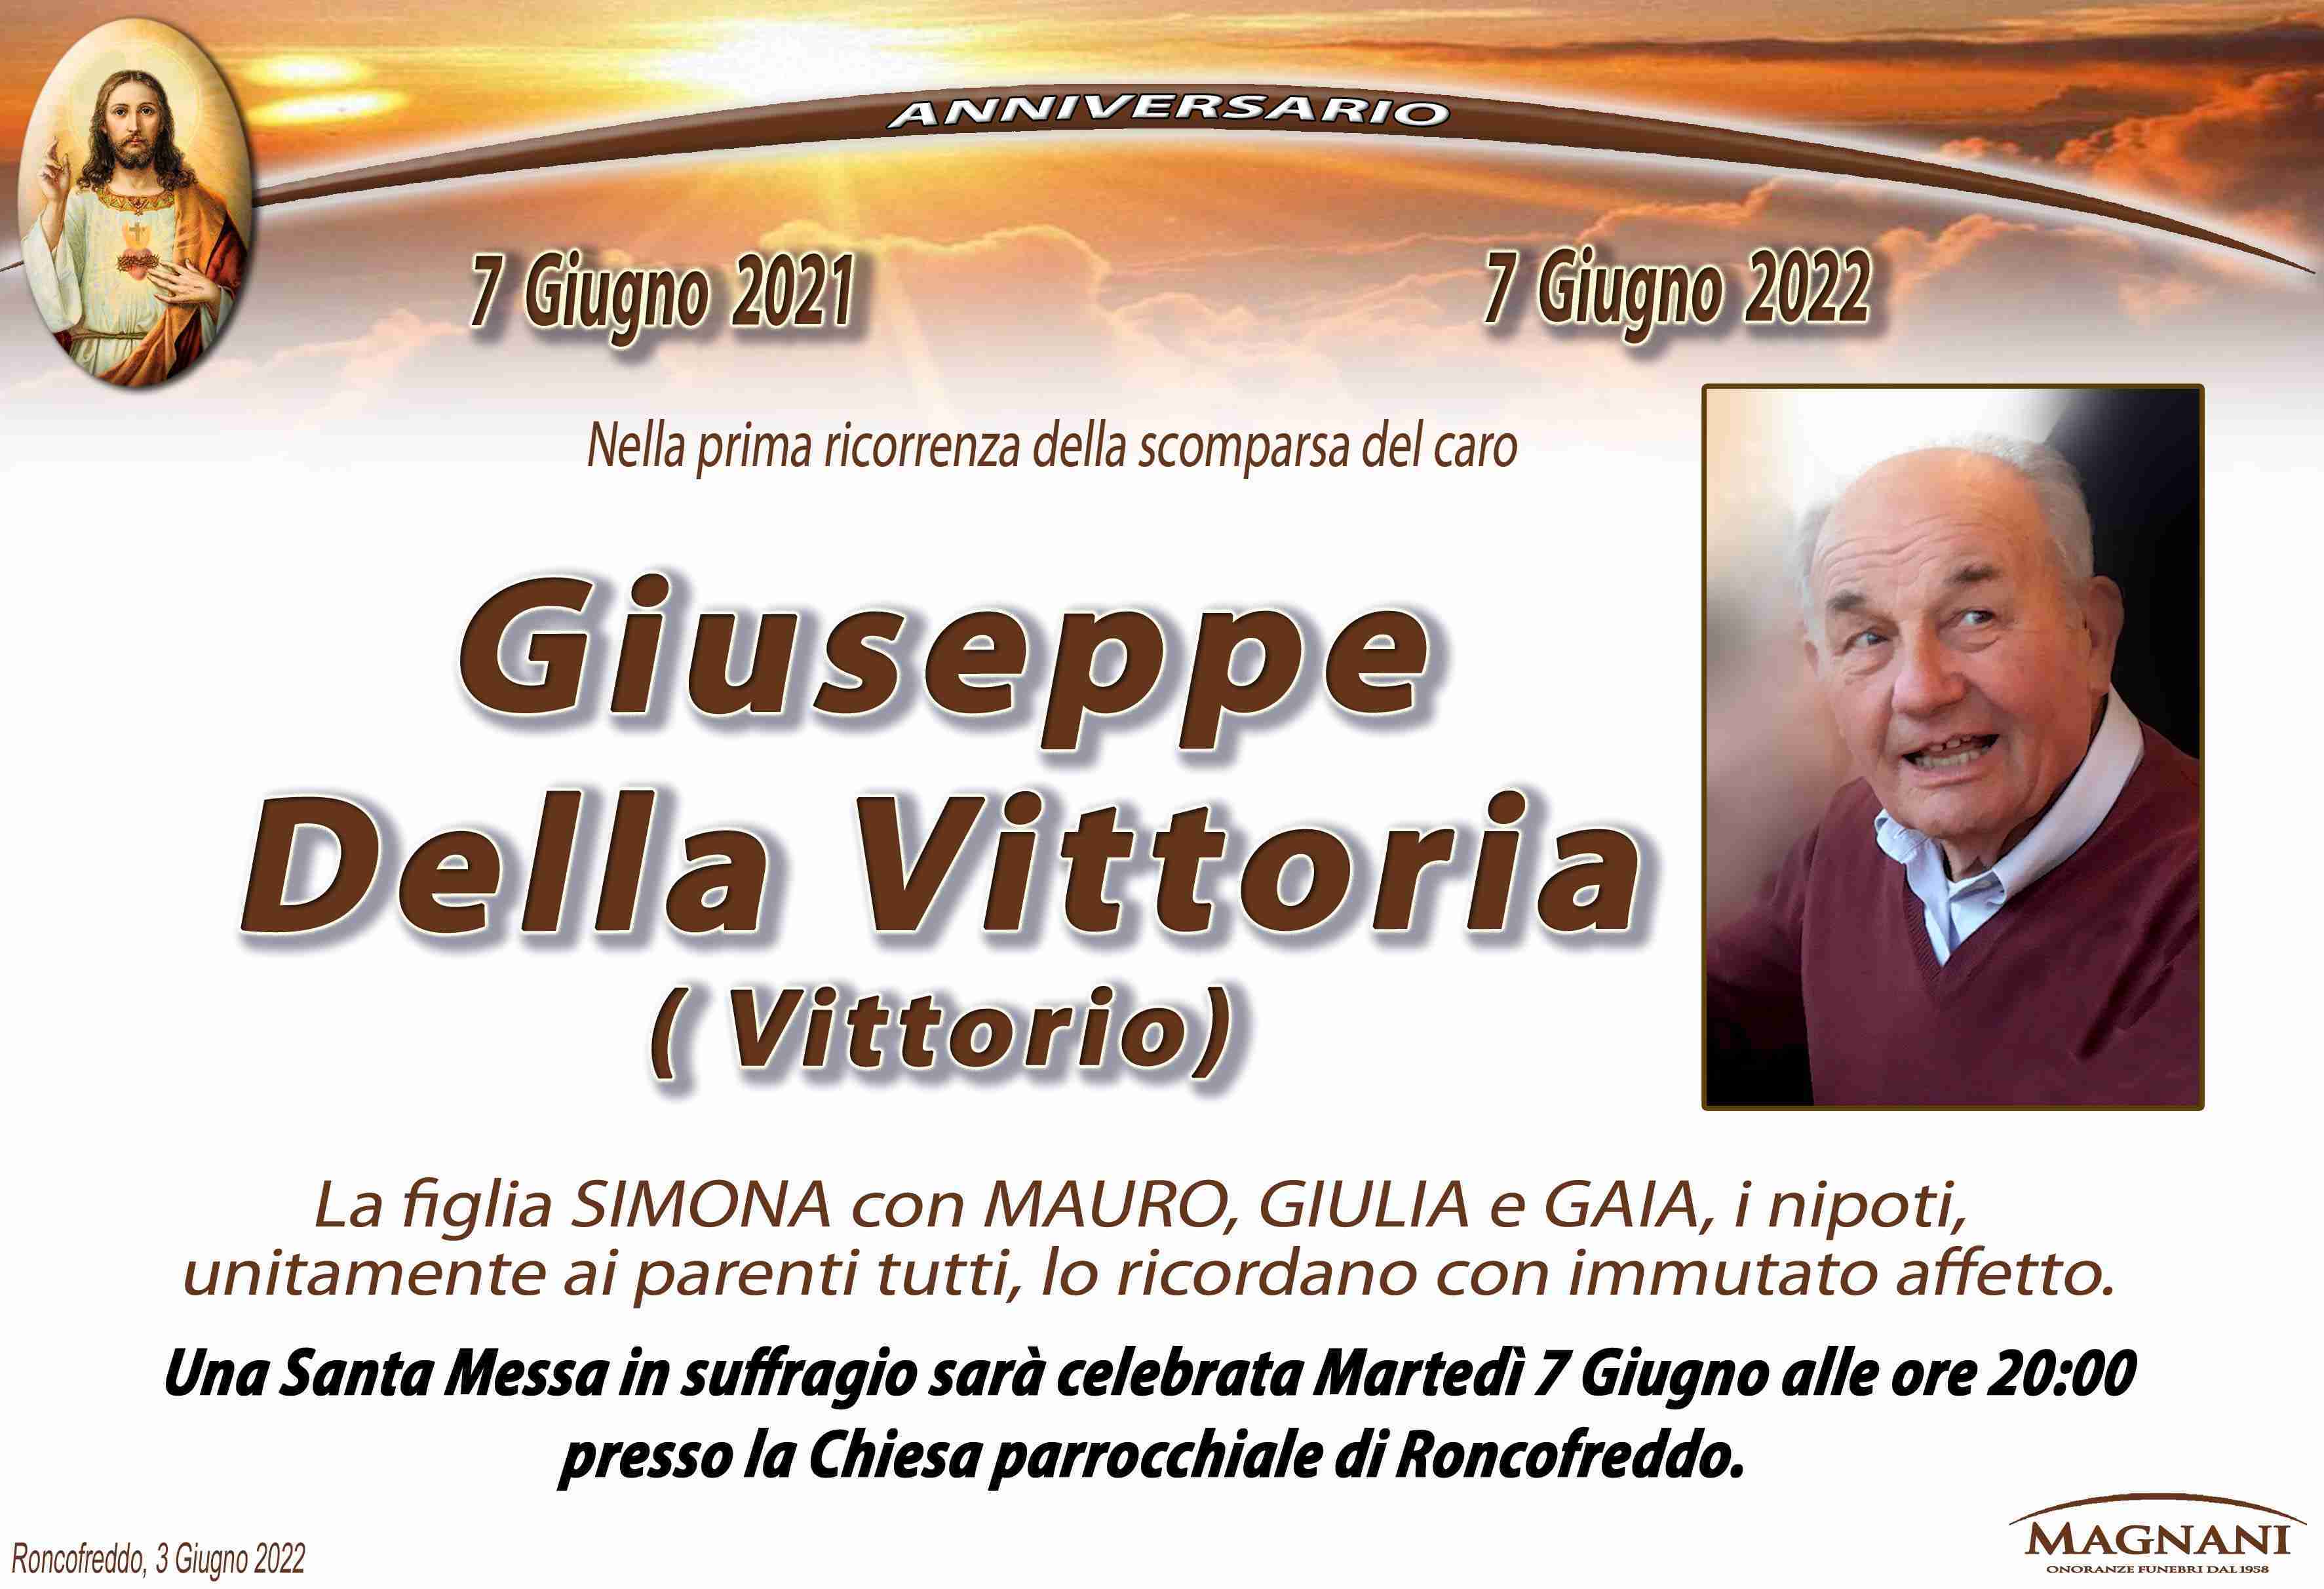 Giuseppe Della Vittoria